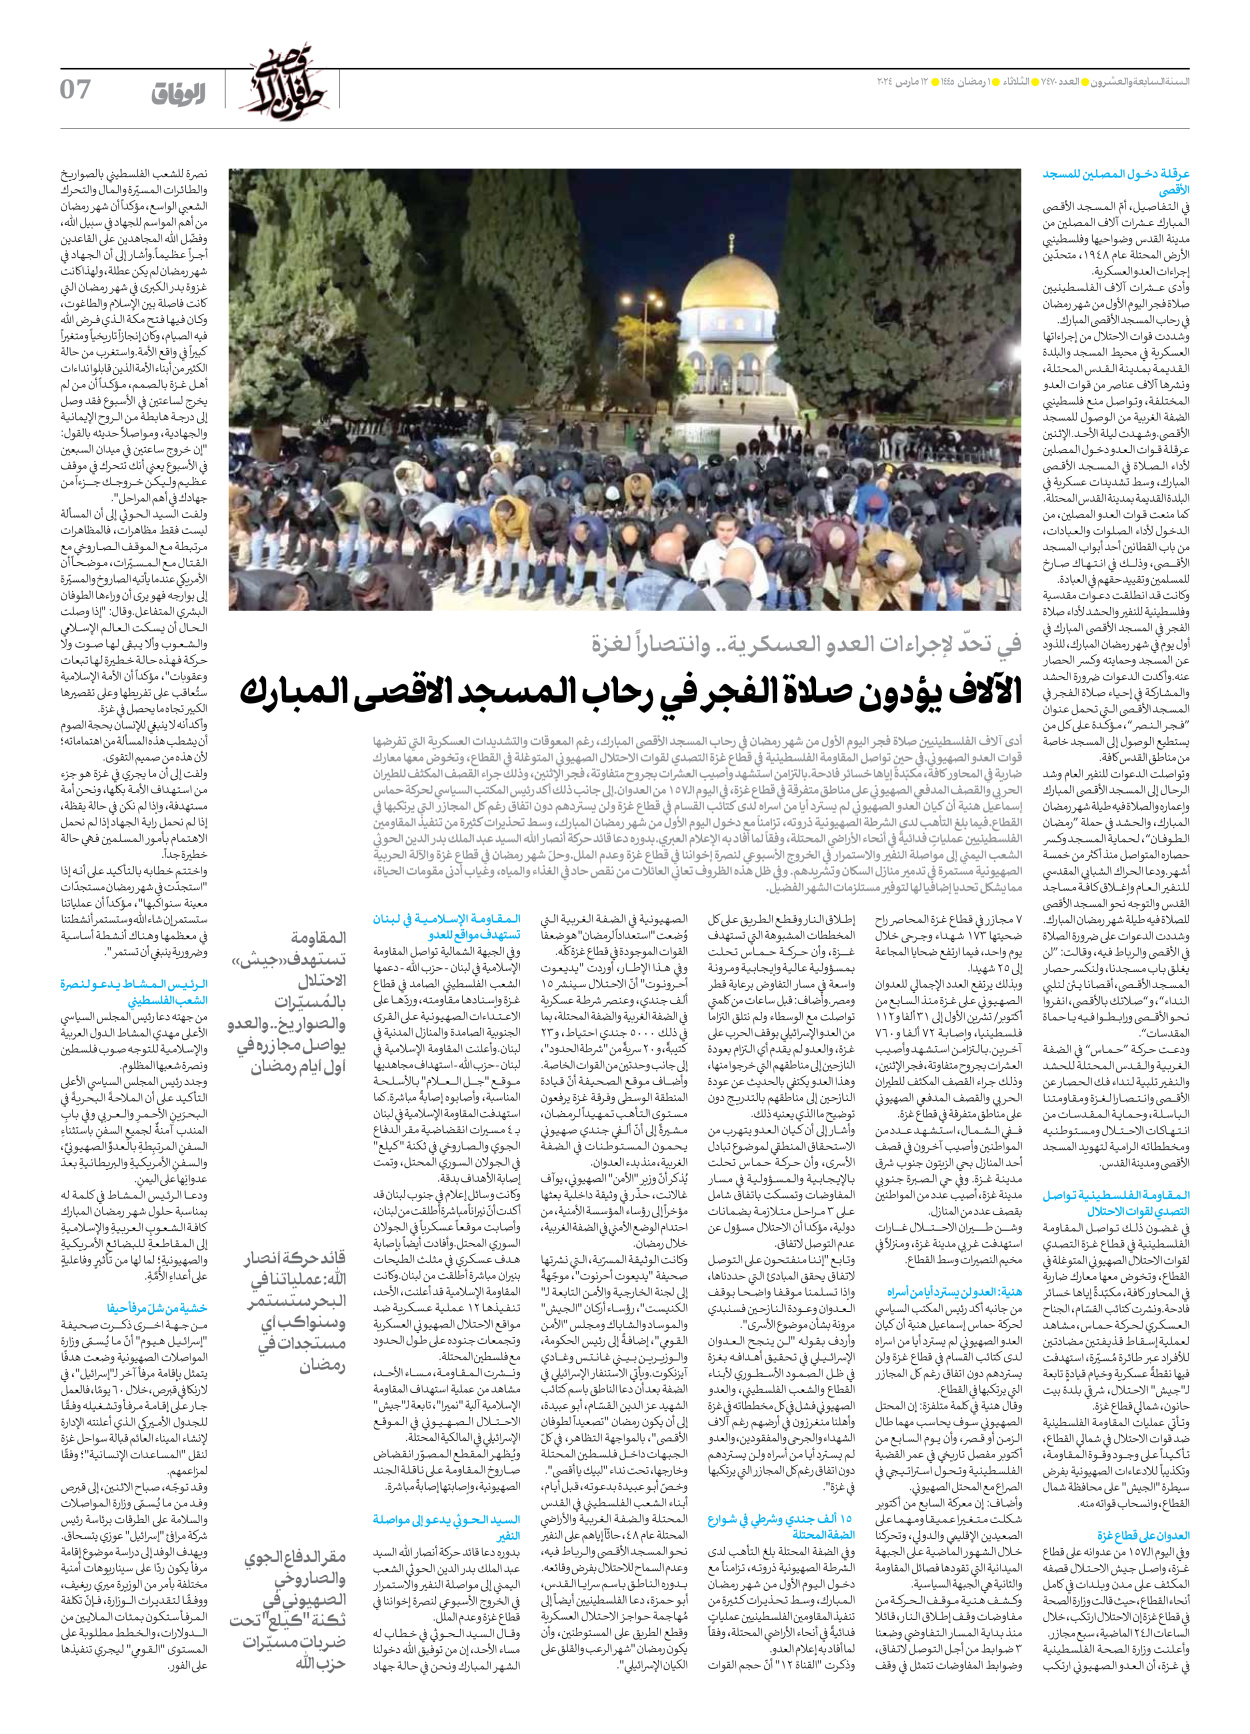 صحیفة ایران الدولیة الوفاق - العدد سبعة آلاف وأربعمائة وسبعون - ١٢ مارس ٢٠٢٤ - الصفحة ۷